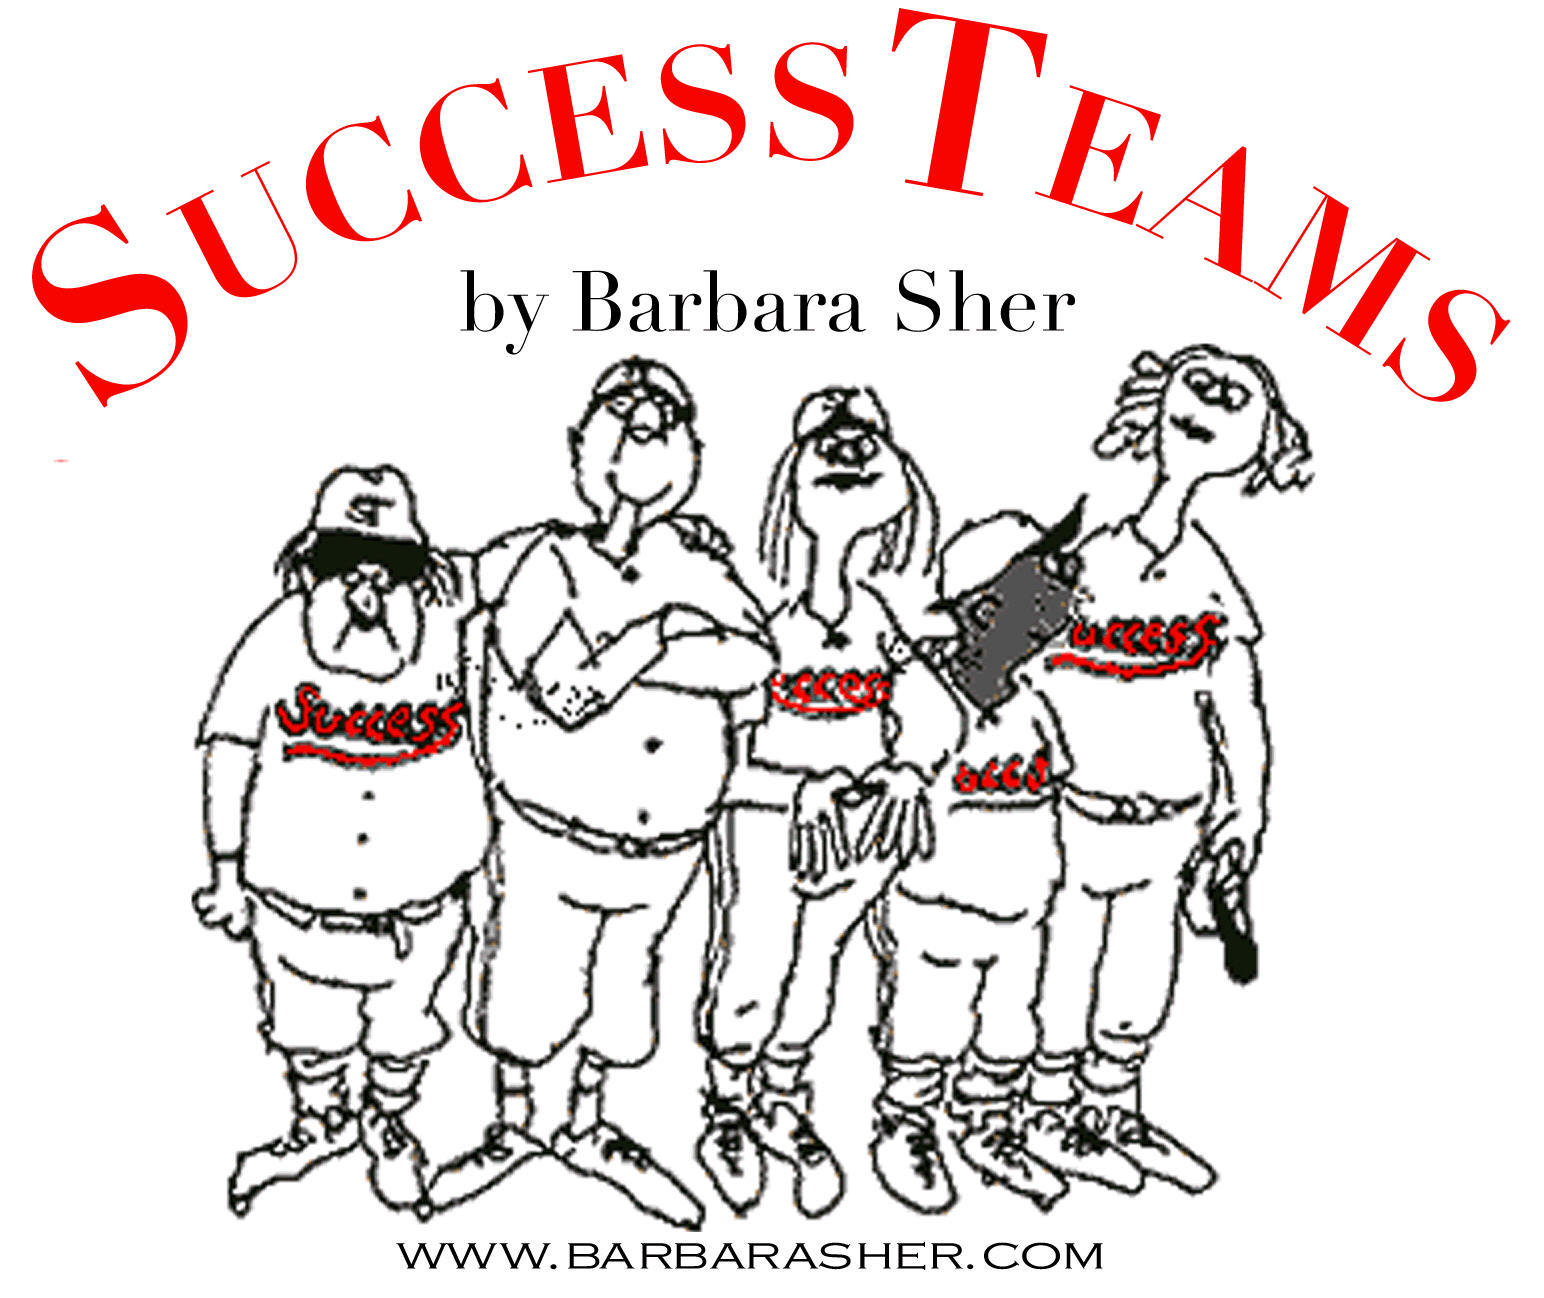 Barbara Sher Success Team starting soon in Dublin!